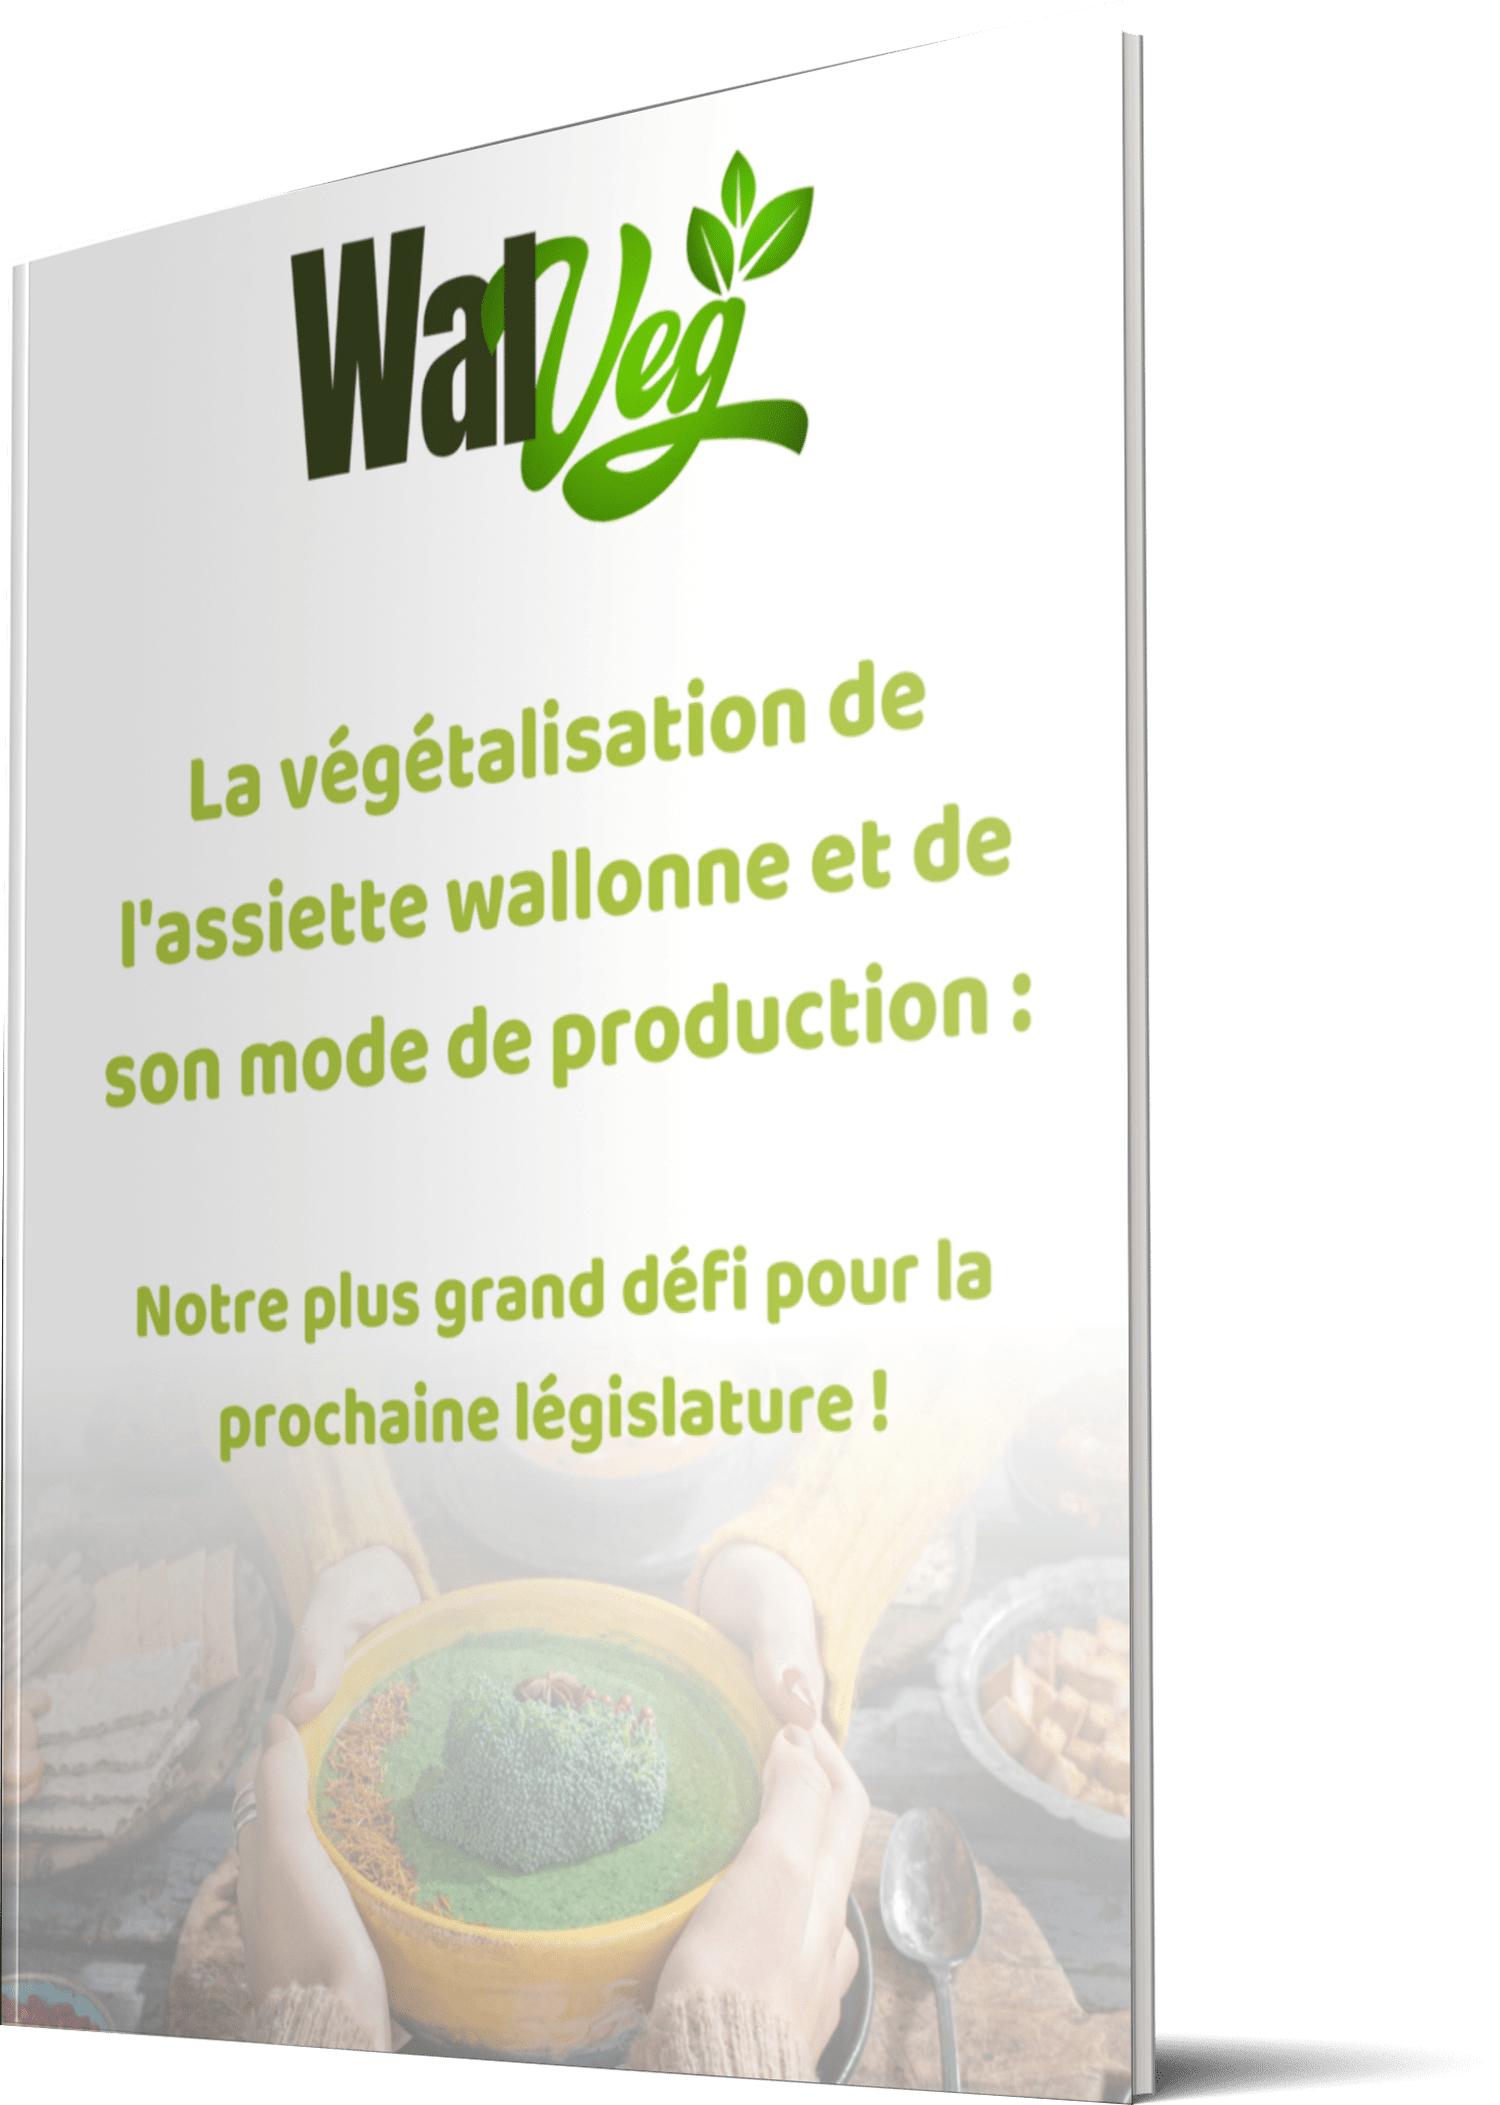 Plaidoyer Walveg. Pourquoi la Wallonie doit intégrer ces 5 mesures de végétalisation des assiettes et de leur mode de production